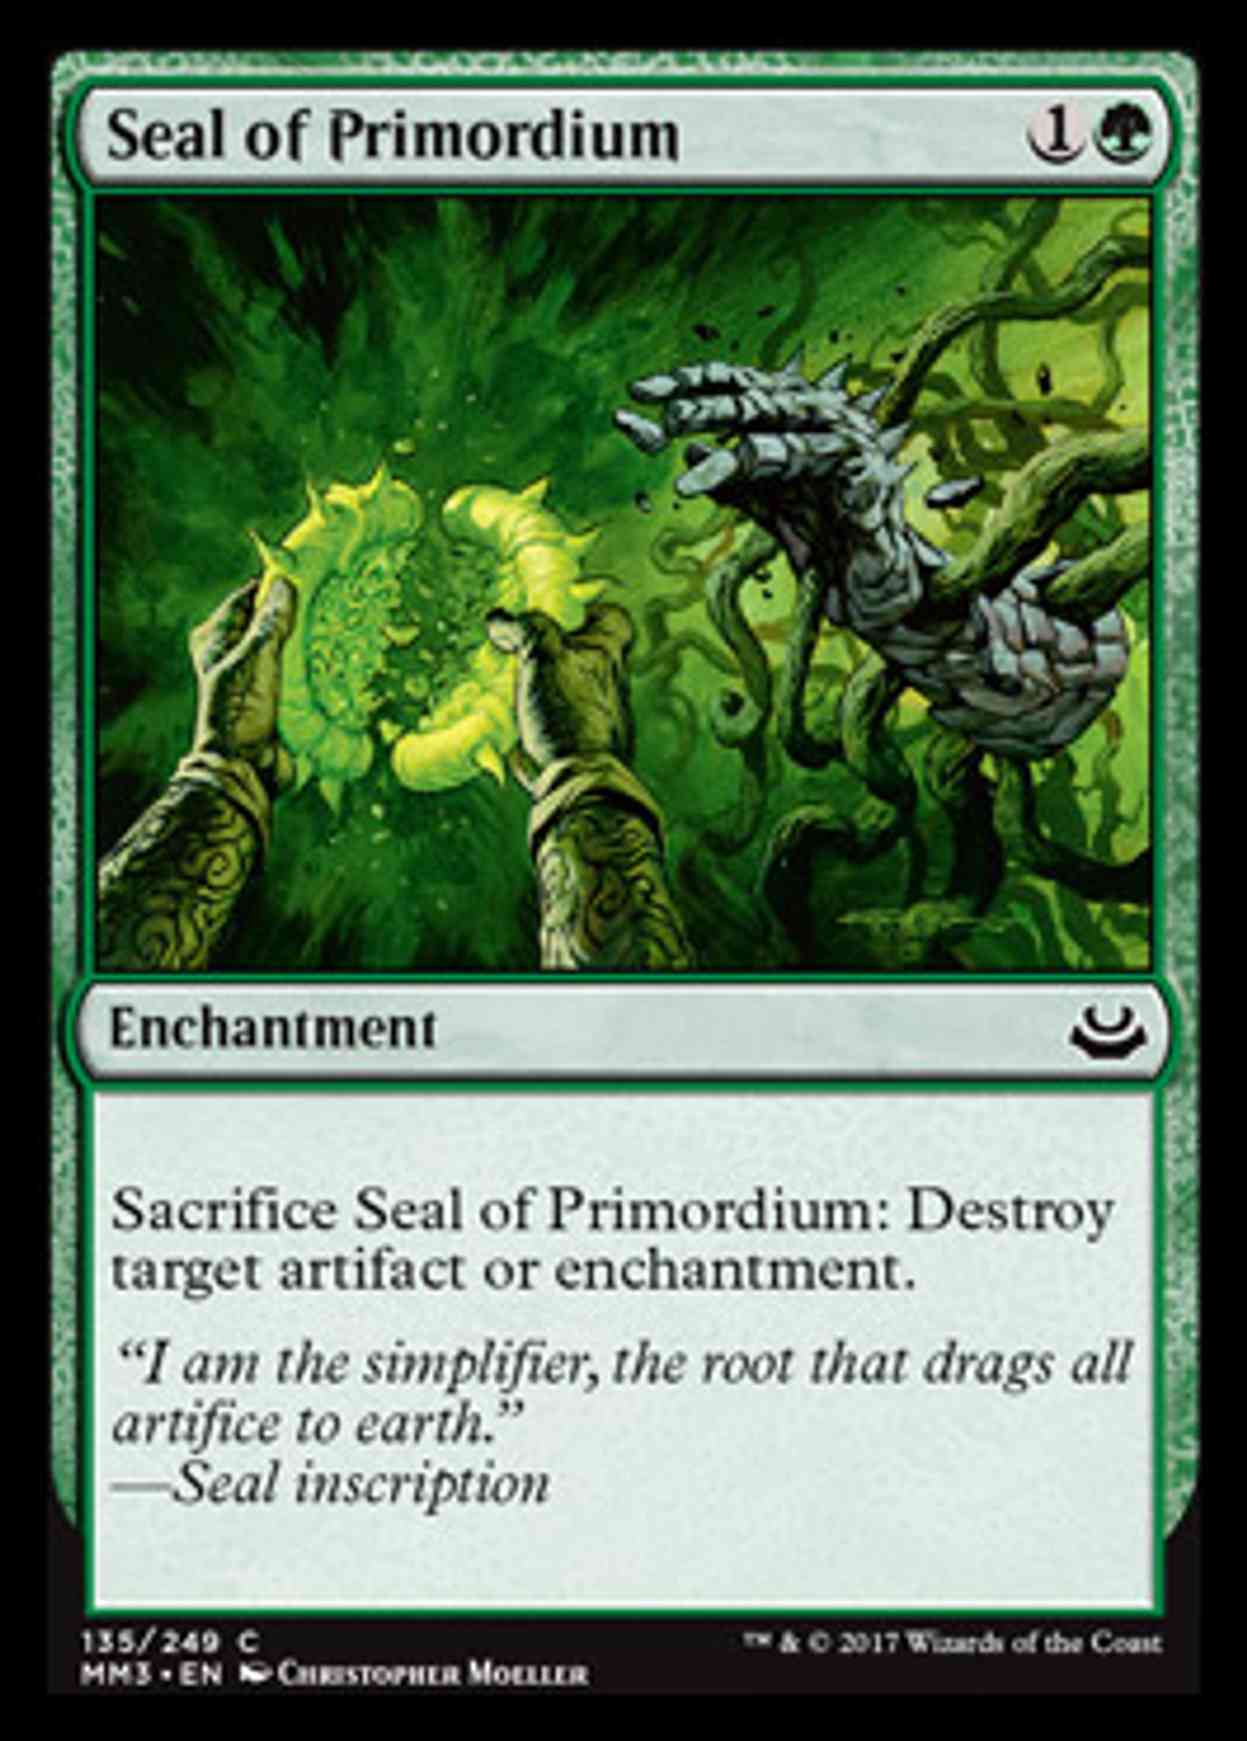 Seal of Primordium magic card front